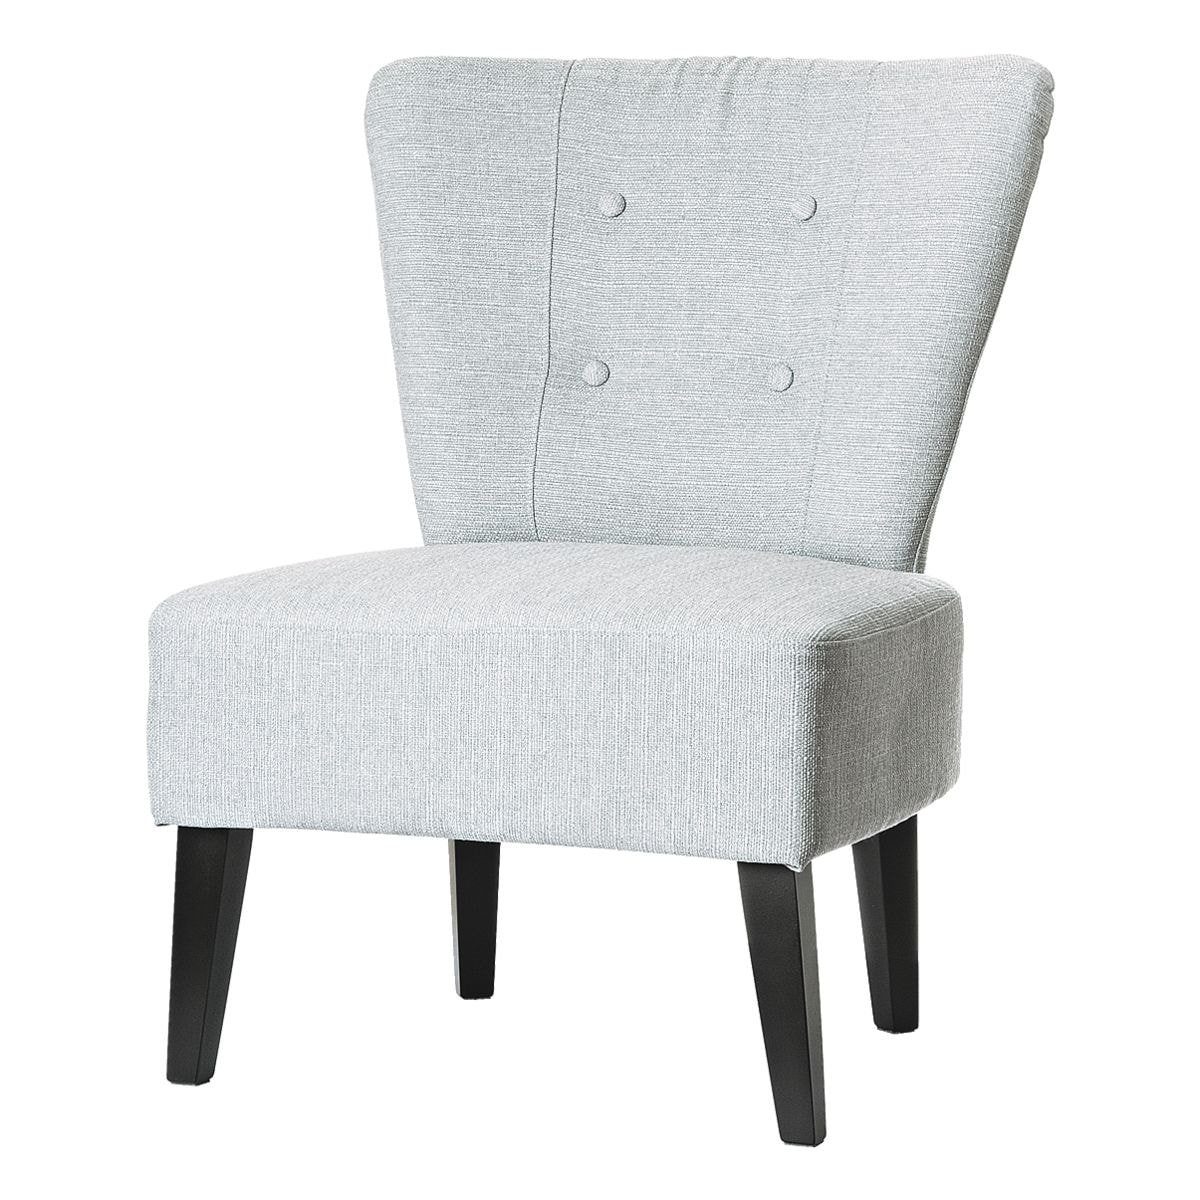 PAPERFLOW Sessel Brighton, im Vintage-Look, extrabreite Sitzfläche, Holzfüße grau